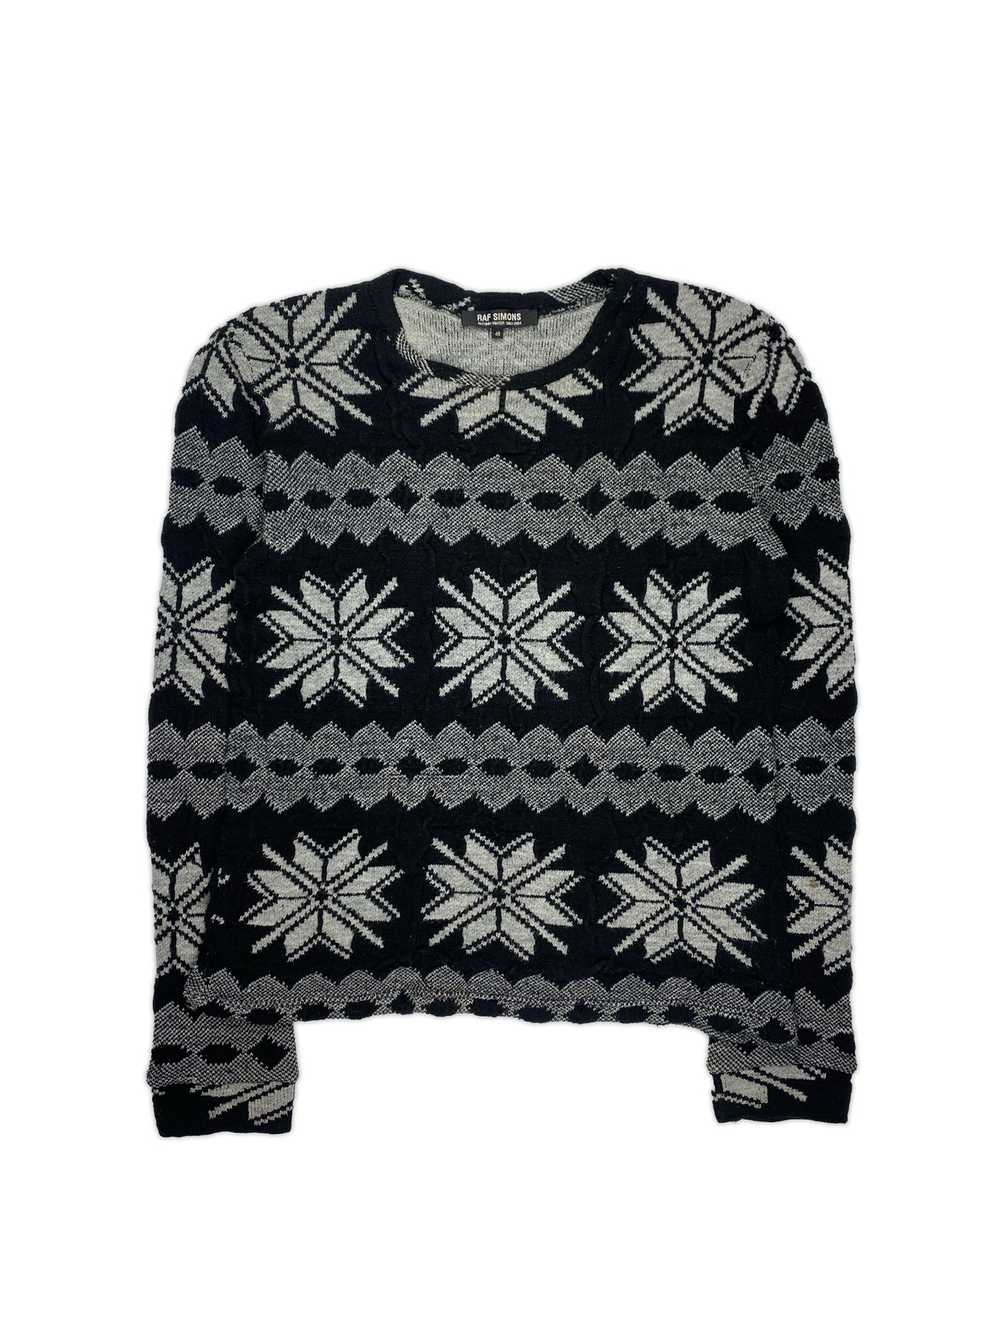 Raf Simons AW03 'Closer' Instartia Sweater - image 1